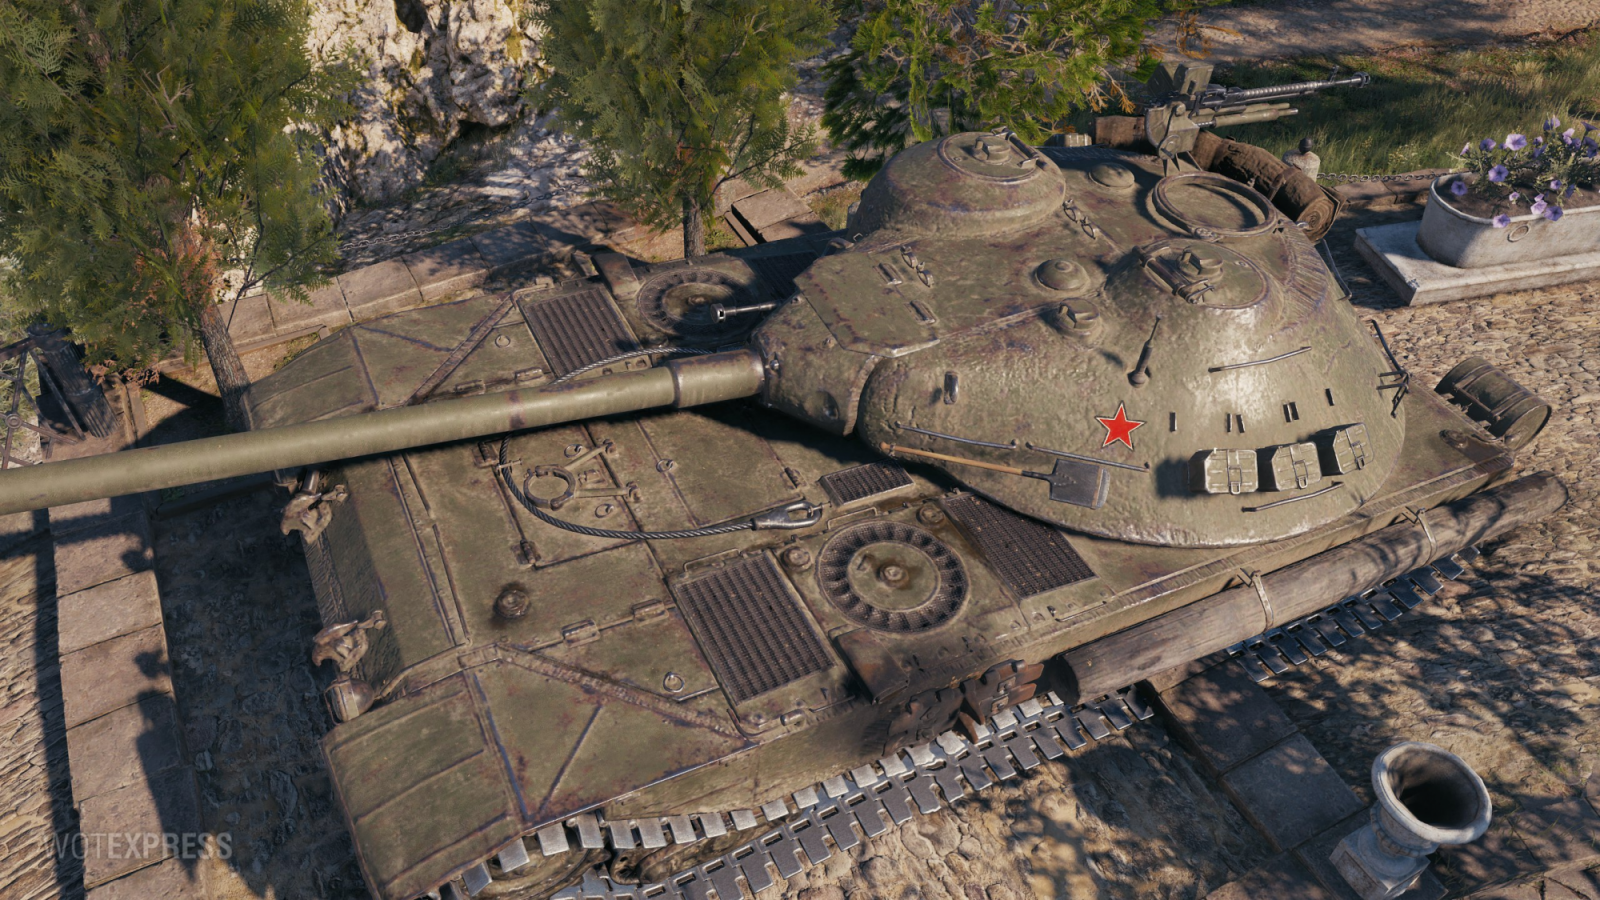 Ст wot. К 91 вот. Ворлд оф танк к 91. К91 World of Tanks. К-91 танк World of Tanks.